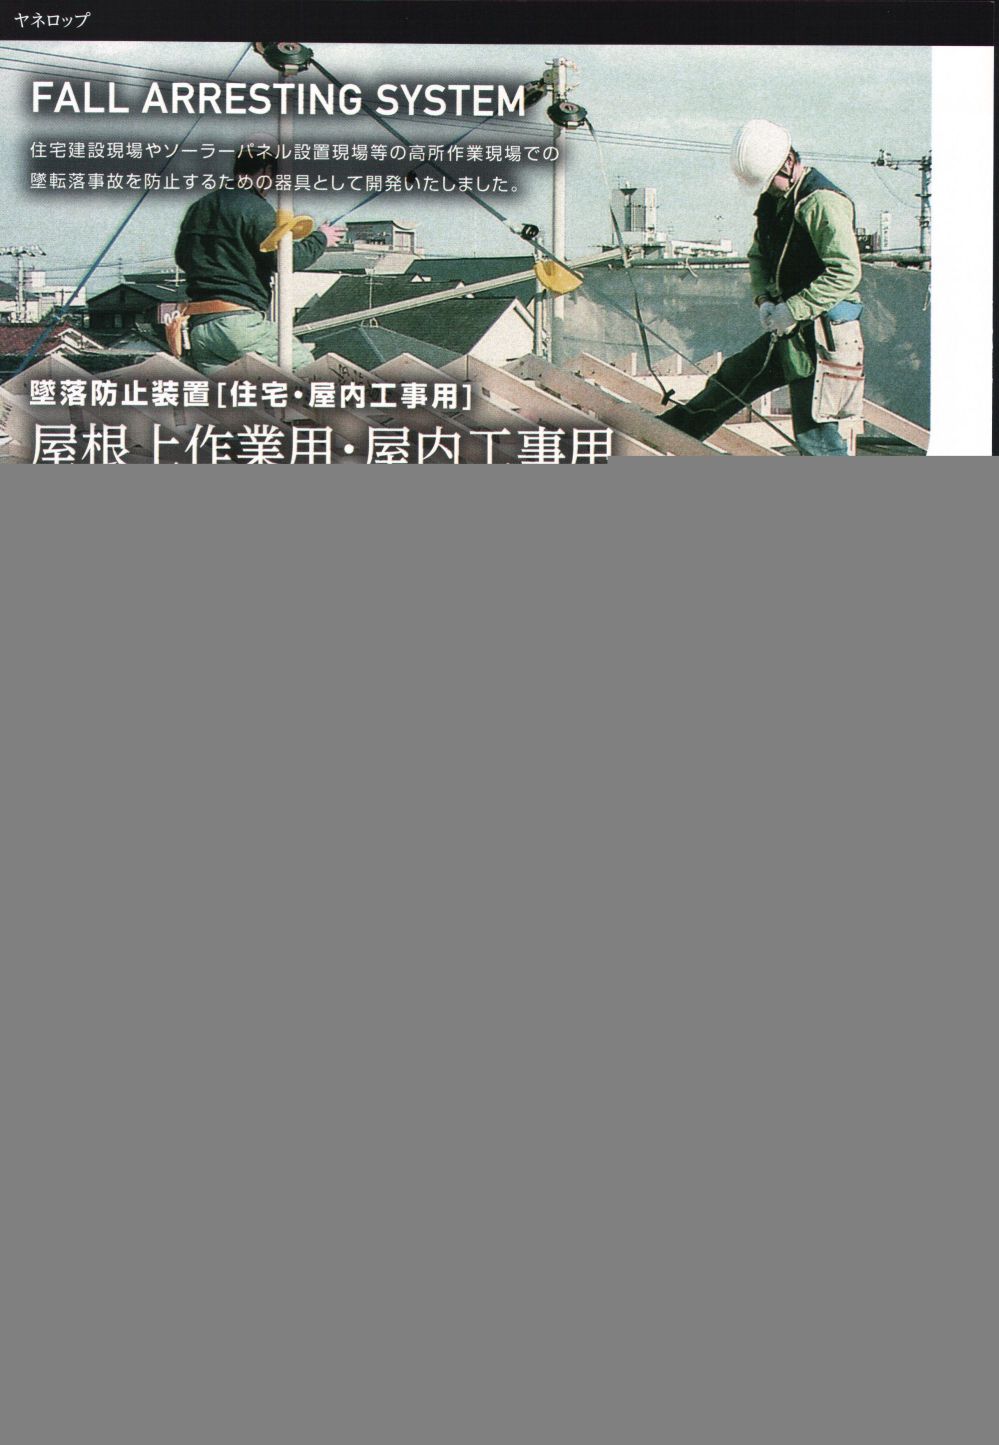 ツヨロン 屋根上作業用墜落防止器具 ヤネロップ300型 一式 YU-300-BX 藤井電工(株) - 1